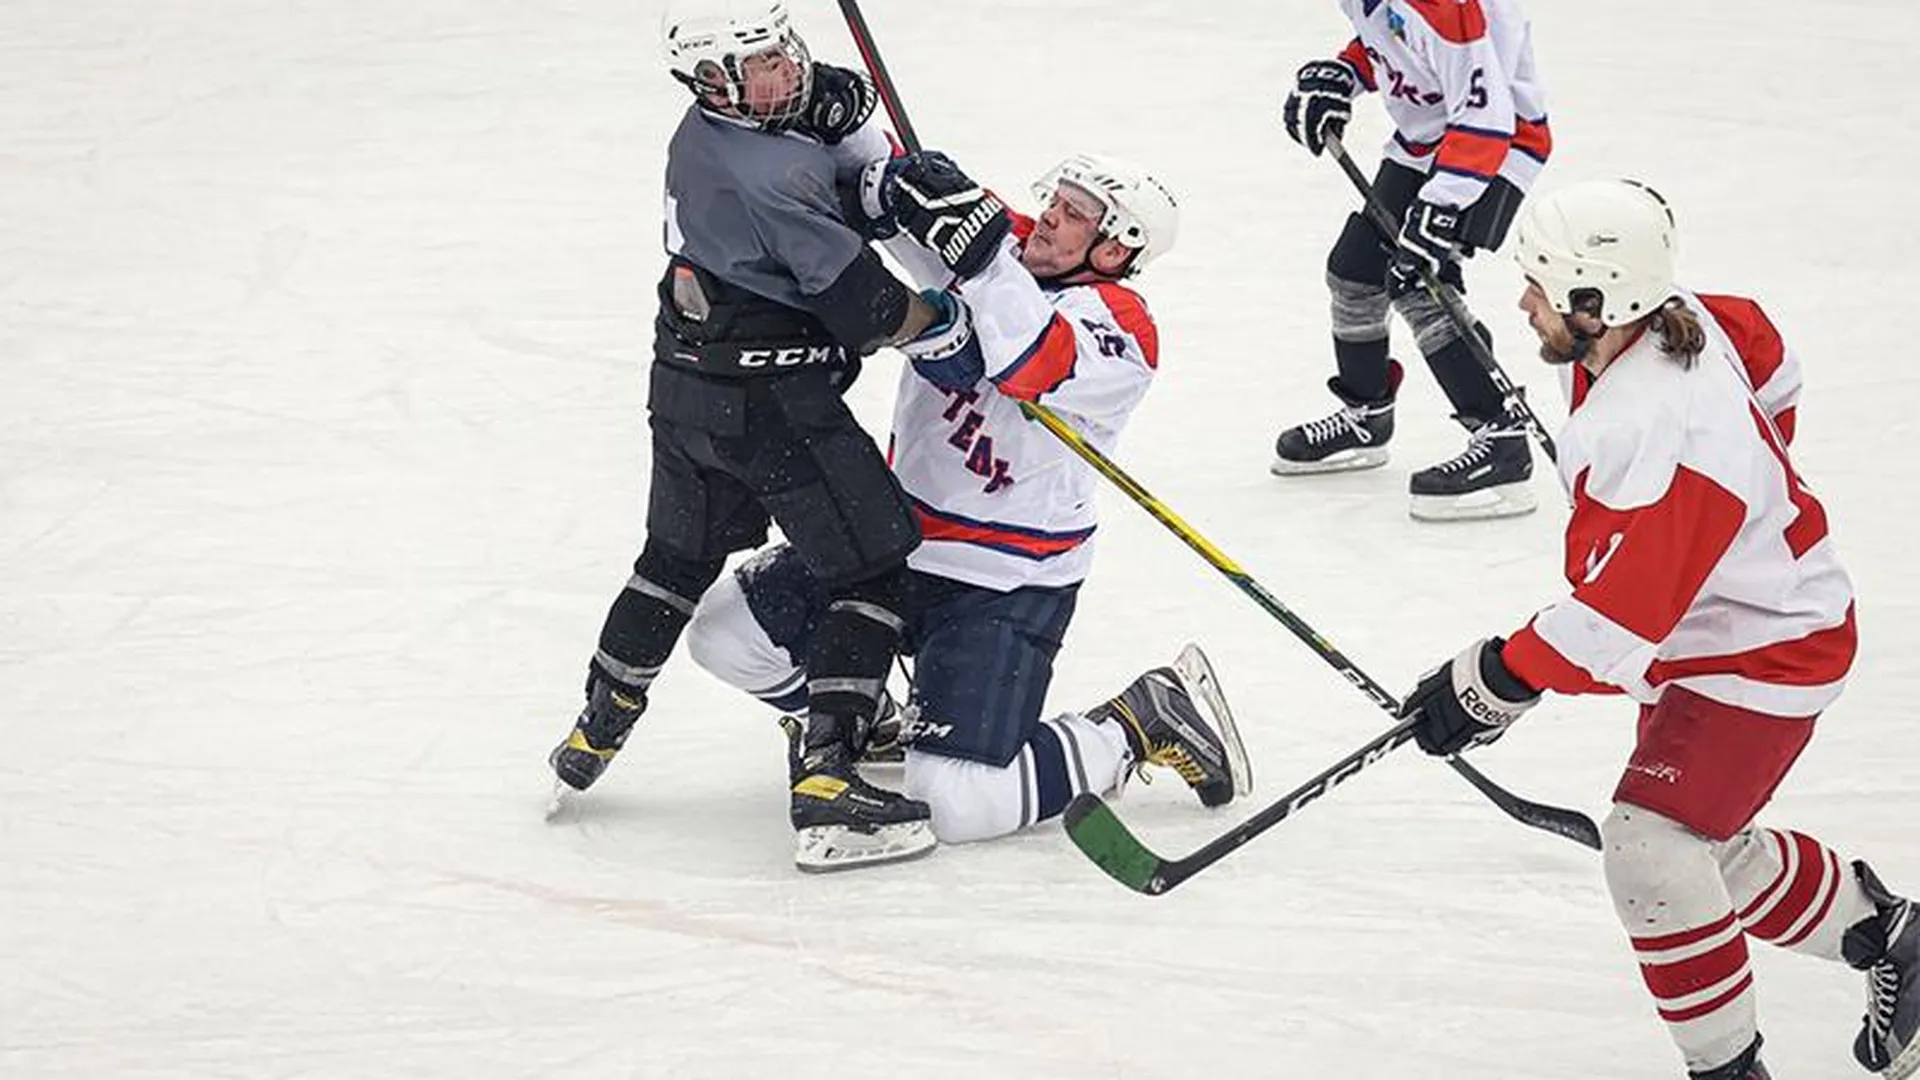 Хоккей на озере, футбол на снегу: чем удивит «Фестиваль зимних видов спорта» в Балашихе